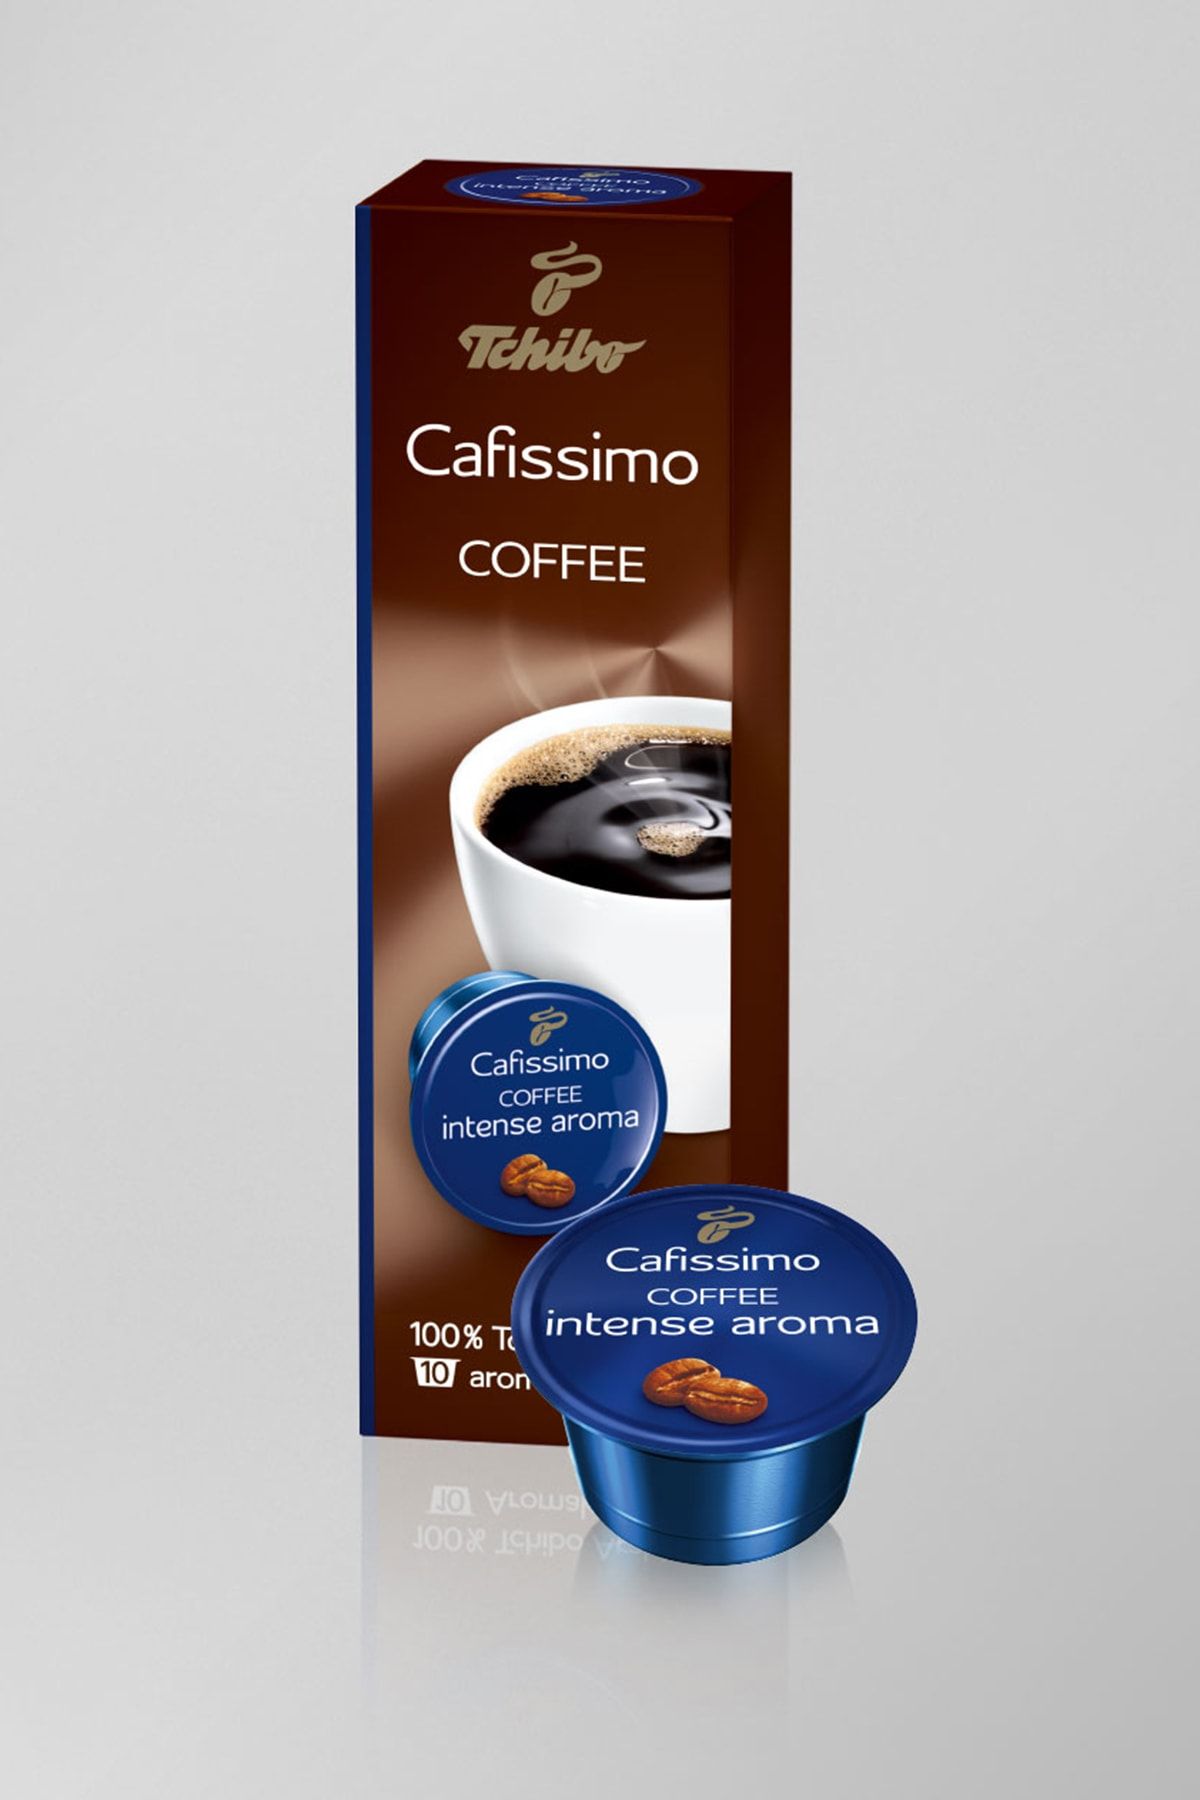 Кофефайн. Интенсивный кофе. Кофе в капсулпх Чико кофе крема. Кофе Чибо фине. Кофе Чибо с голубой крышкой.